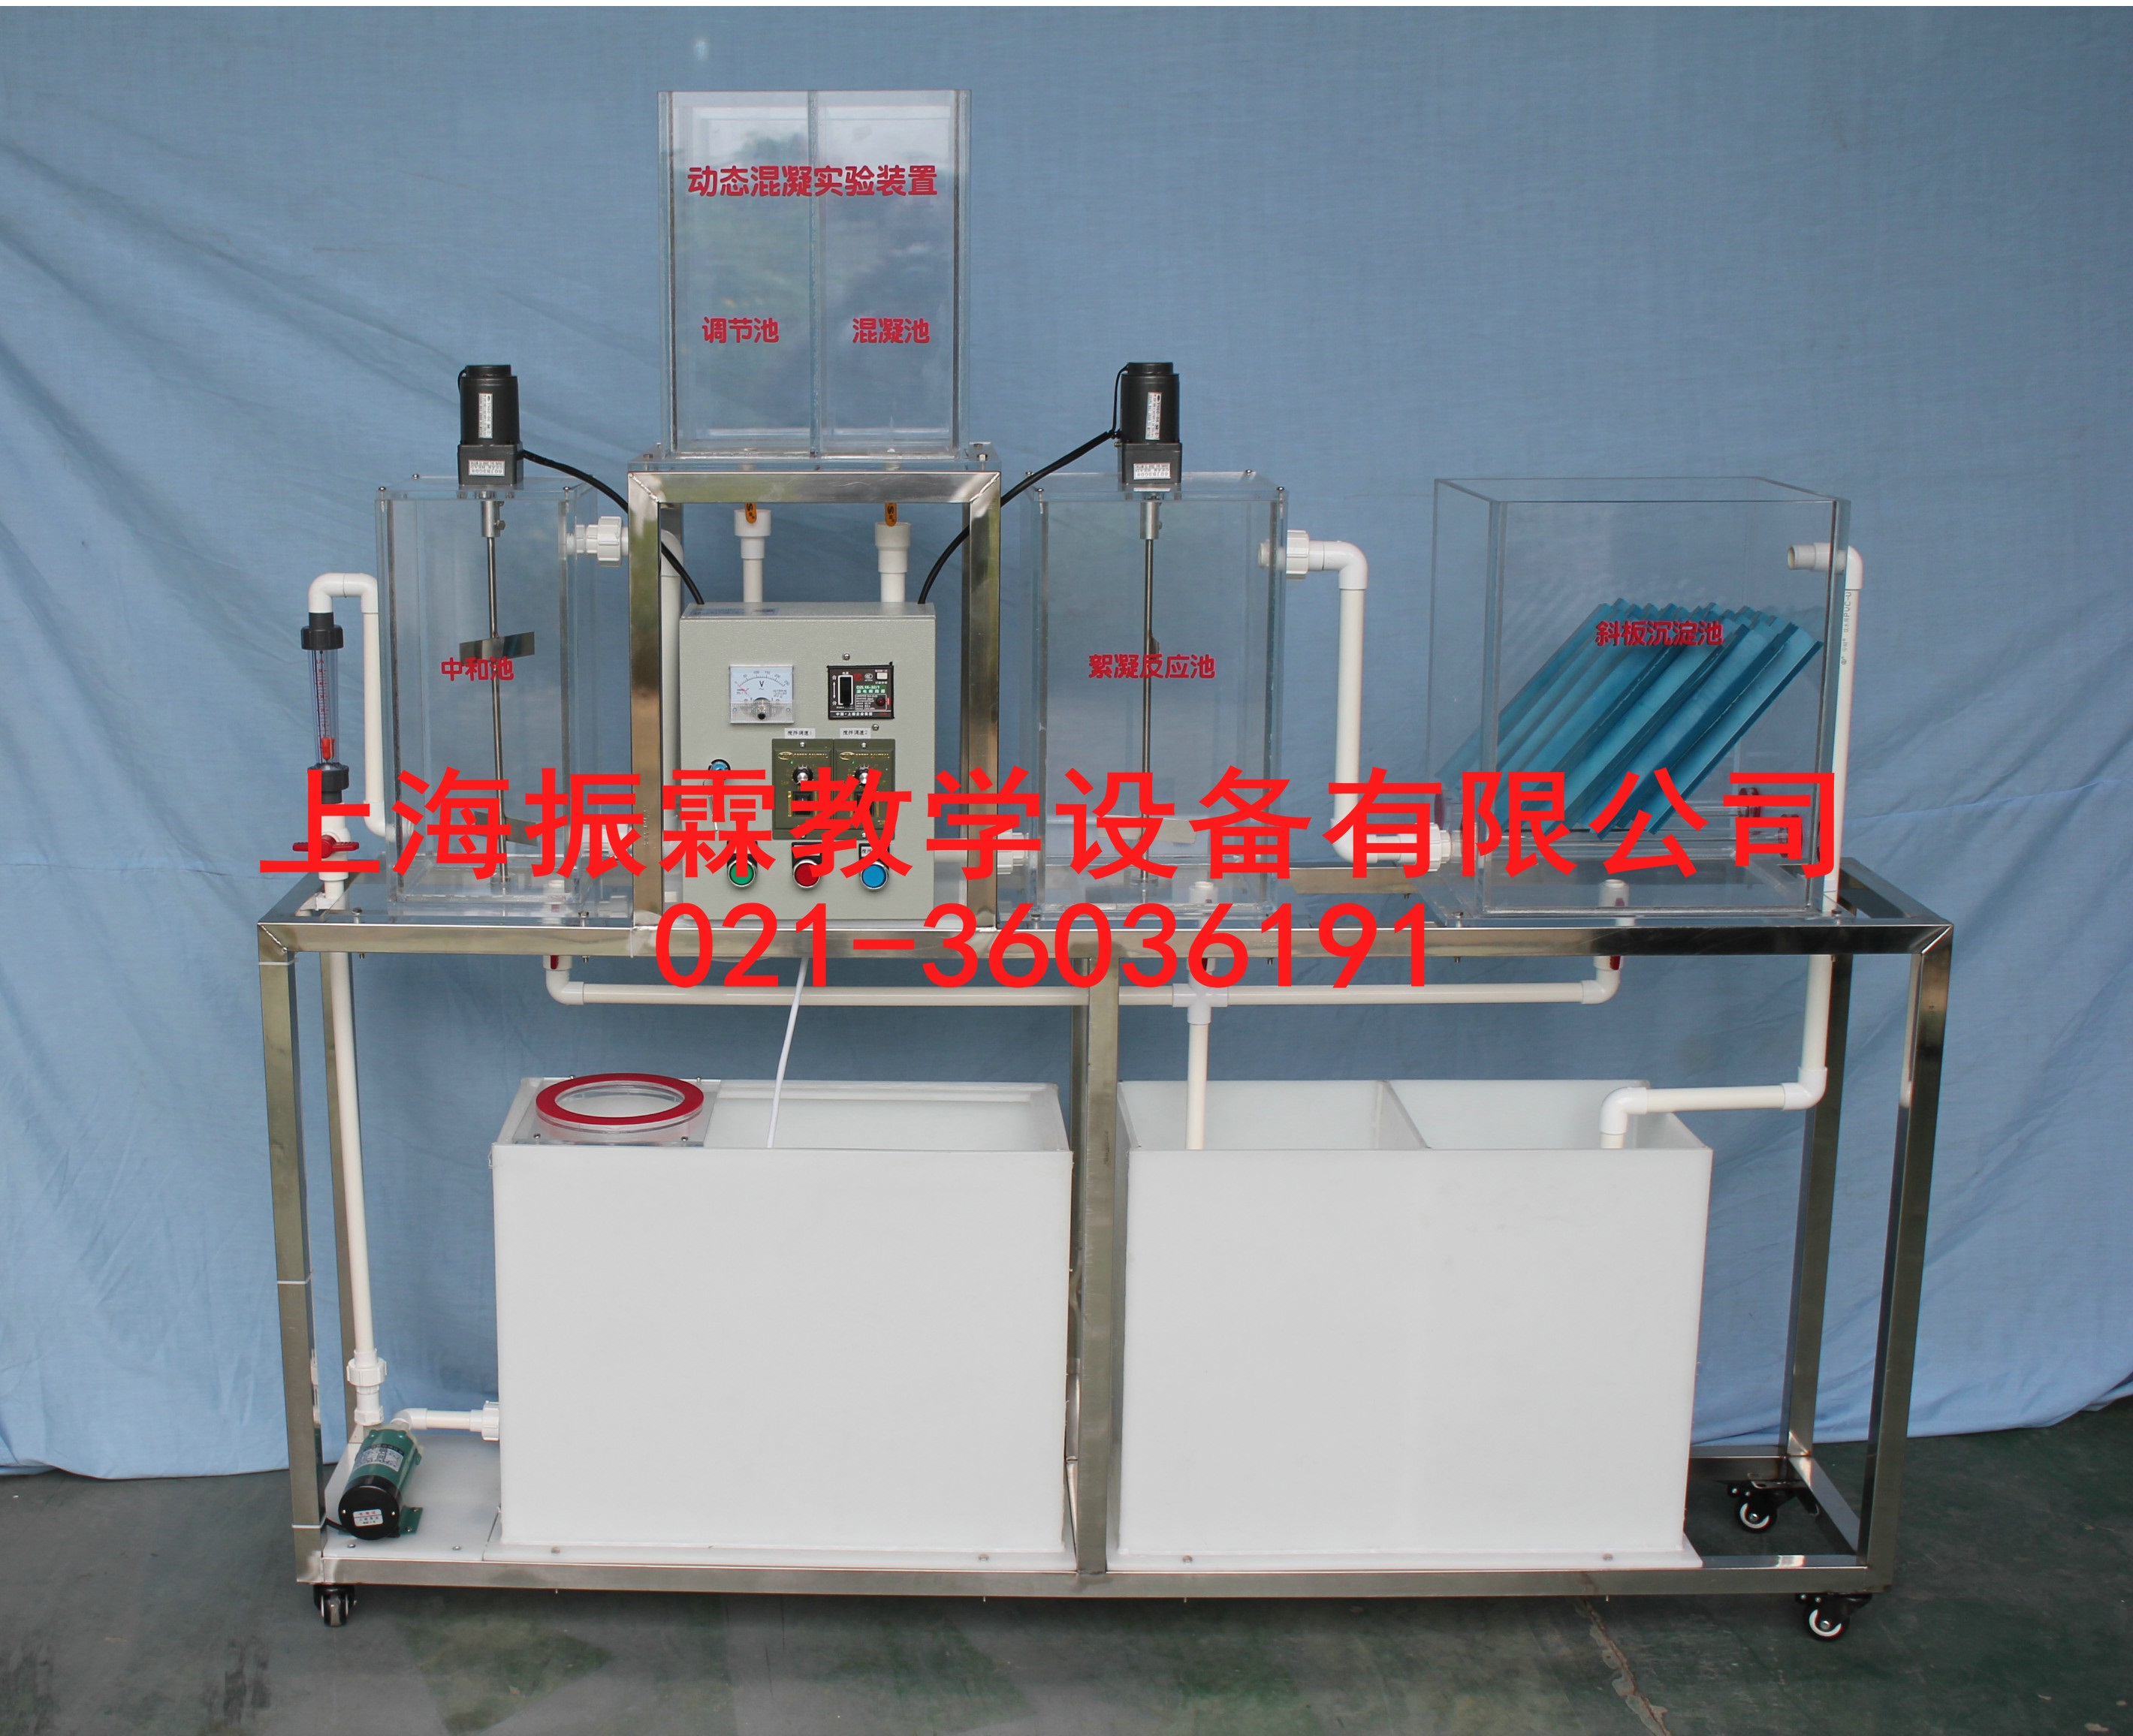 动态混凝实验装置,动态混凝试验设备,动态混凝实训系统--上海振霖公司